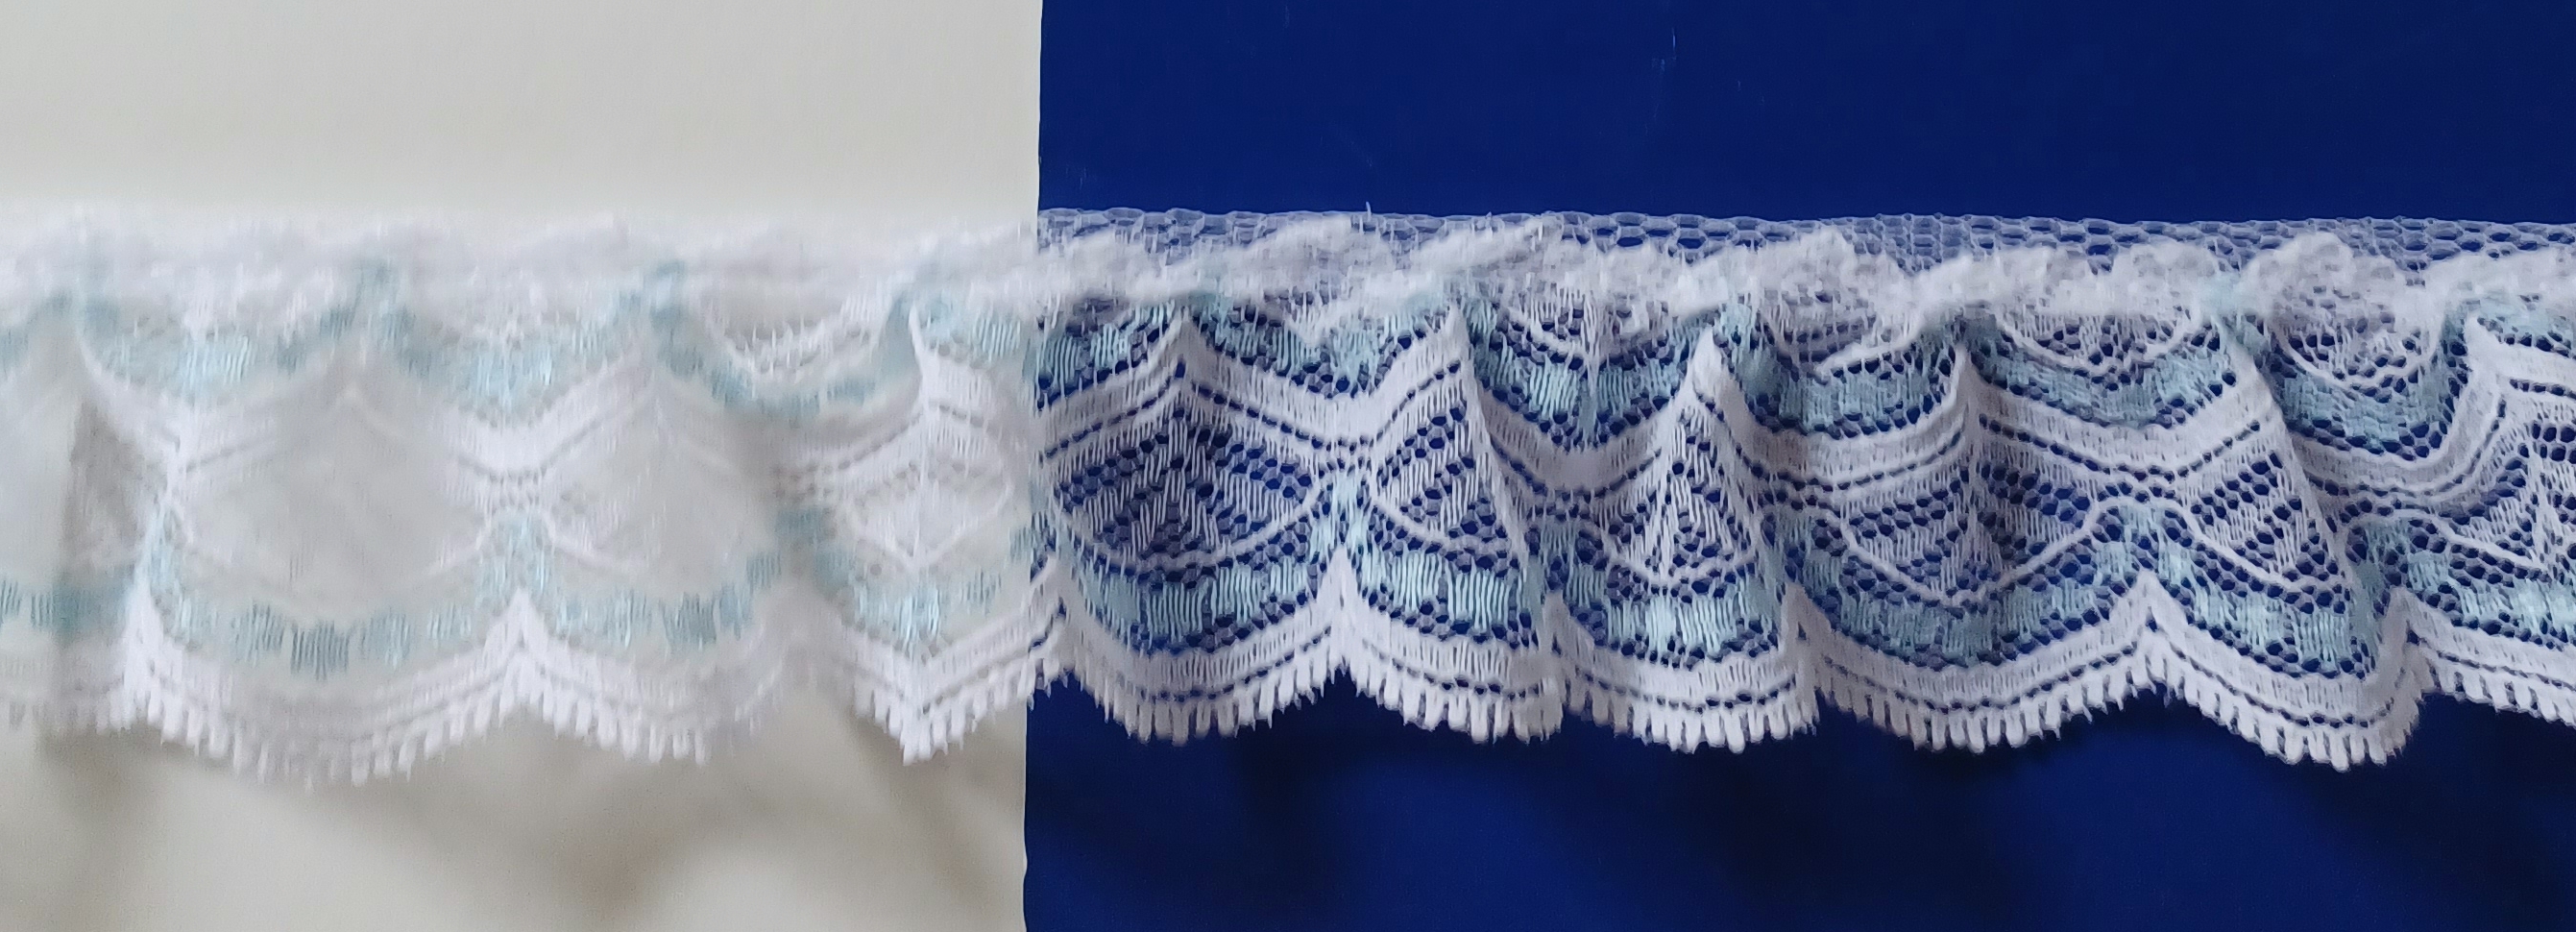 White/Shiny Blue 1 3/4" Ruffled Lace